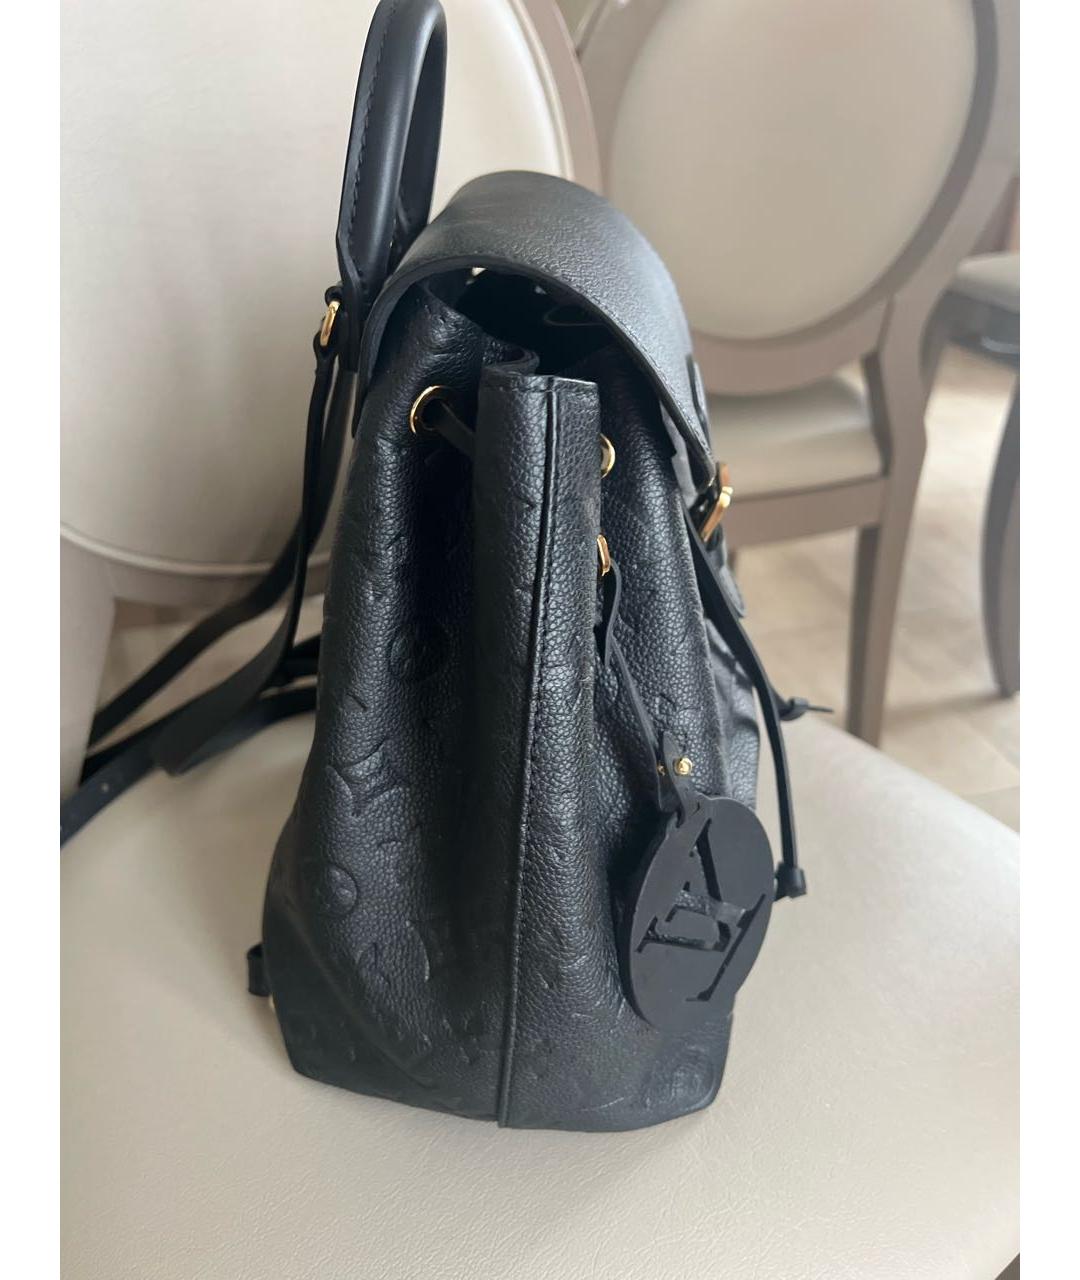 LOUIS VUITTON PRE-OWNED Черный кожаный рюкзак, фото 2